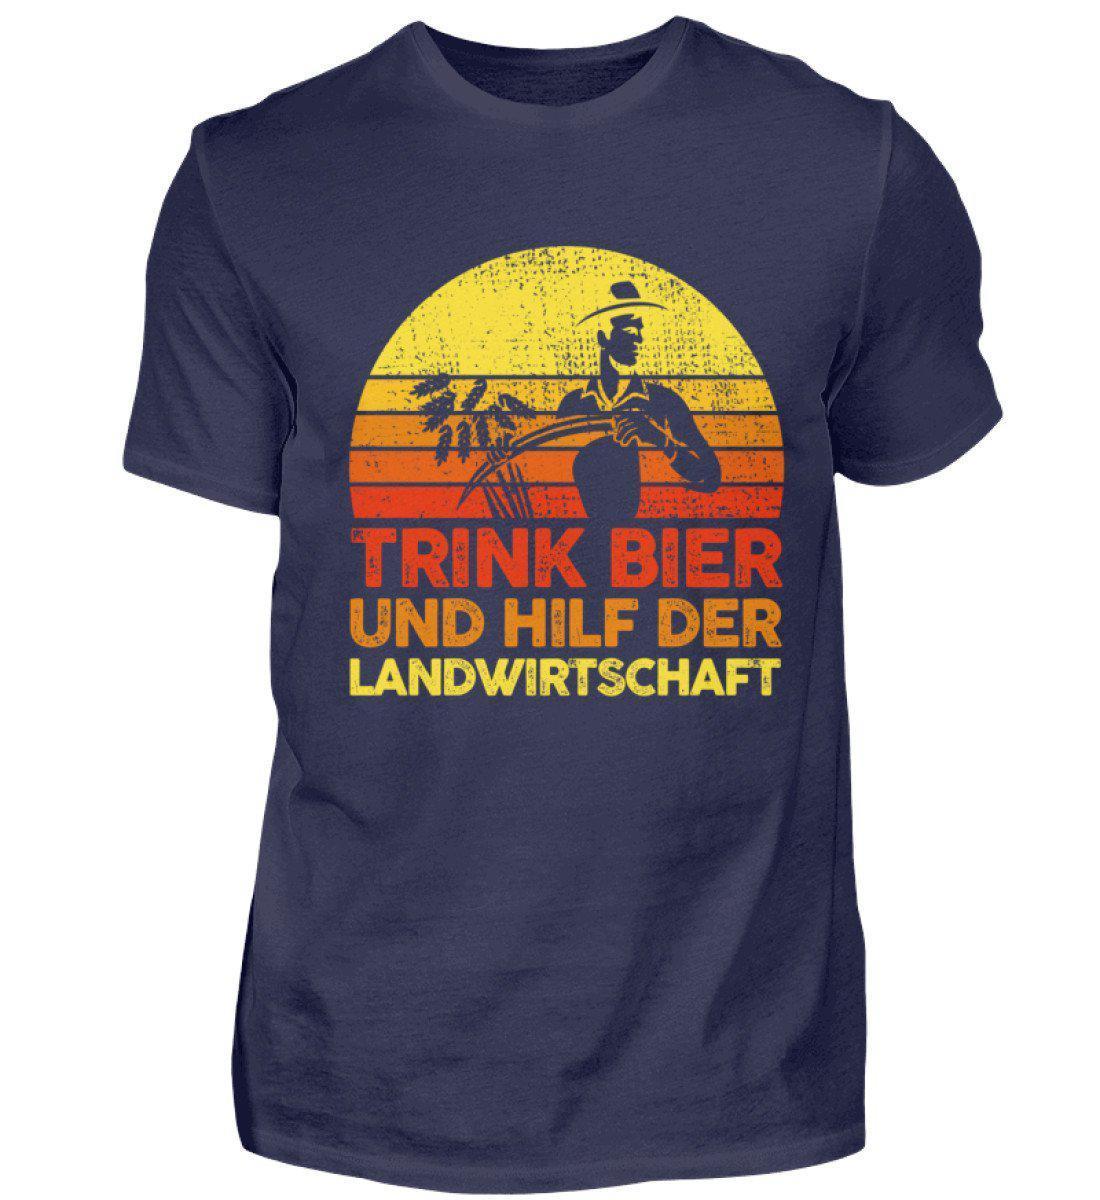 Trink Bier hilf Landwirtschaft Retro · Herren T-Shirt-Herren Basic T-Shirt-Navy-S-Agrarstarz